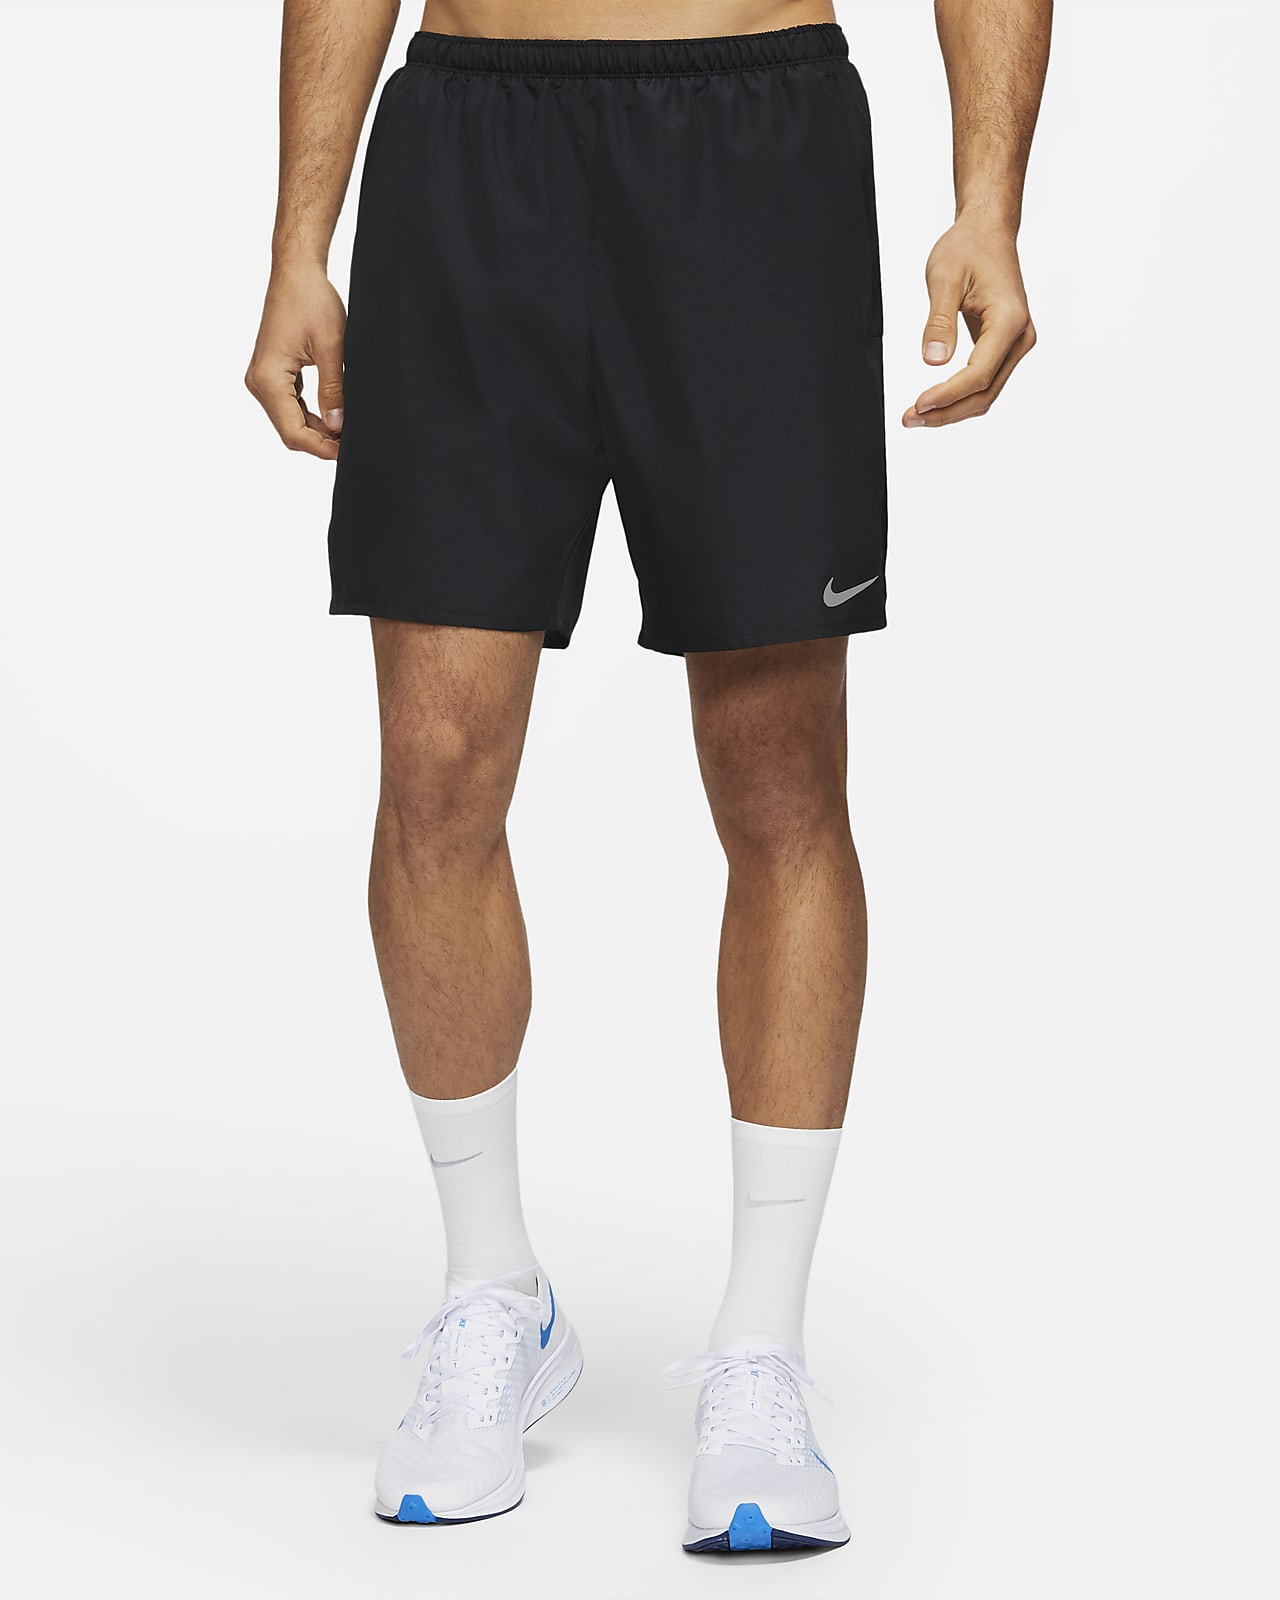 sofá preposición Hacer las tareas domésticas Shorts de running 2 en 1 para hombre Nike Challenger. Nike MX